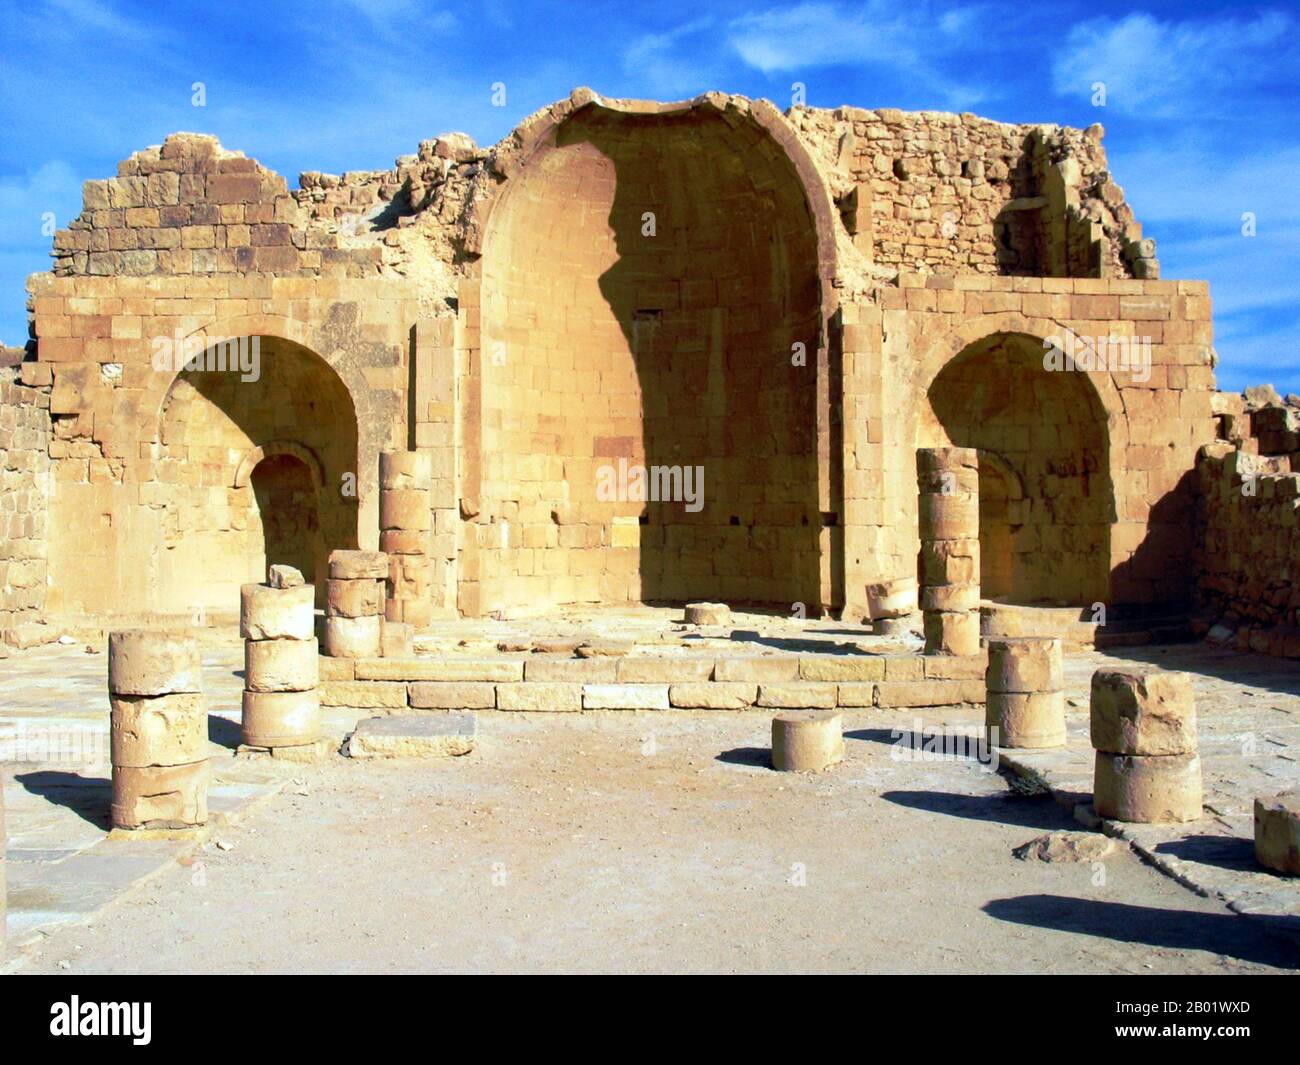 Israël : les ruines d'une église dans la ville ruinée de Shivta dans le désert du Néguev le long de l'ancienne route de l'encens. Photo ester Inbar (licence CC BY-sa 3,0). Shivta est une ancienne ville dans le désert du Néguev en Israël, à l'est de Nitzana. Shivta a été déclarée site du patrimoine mondial de l'UNESCO en juin 2005. Longtemps considérée comme une ville nabatéenne classique sur l'ancienne route des épices, les archéologues envisagent également la possibilité que Shivta soit une colonie agricole byzantine et une station de passage pour les pèlerins en route vers le monastère Sainte Catherine dans le Sinaï. Banque D'Images